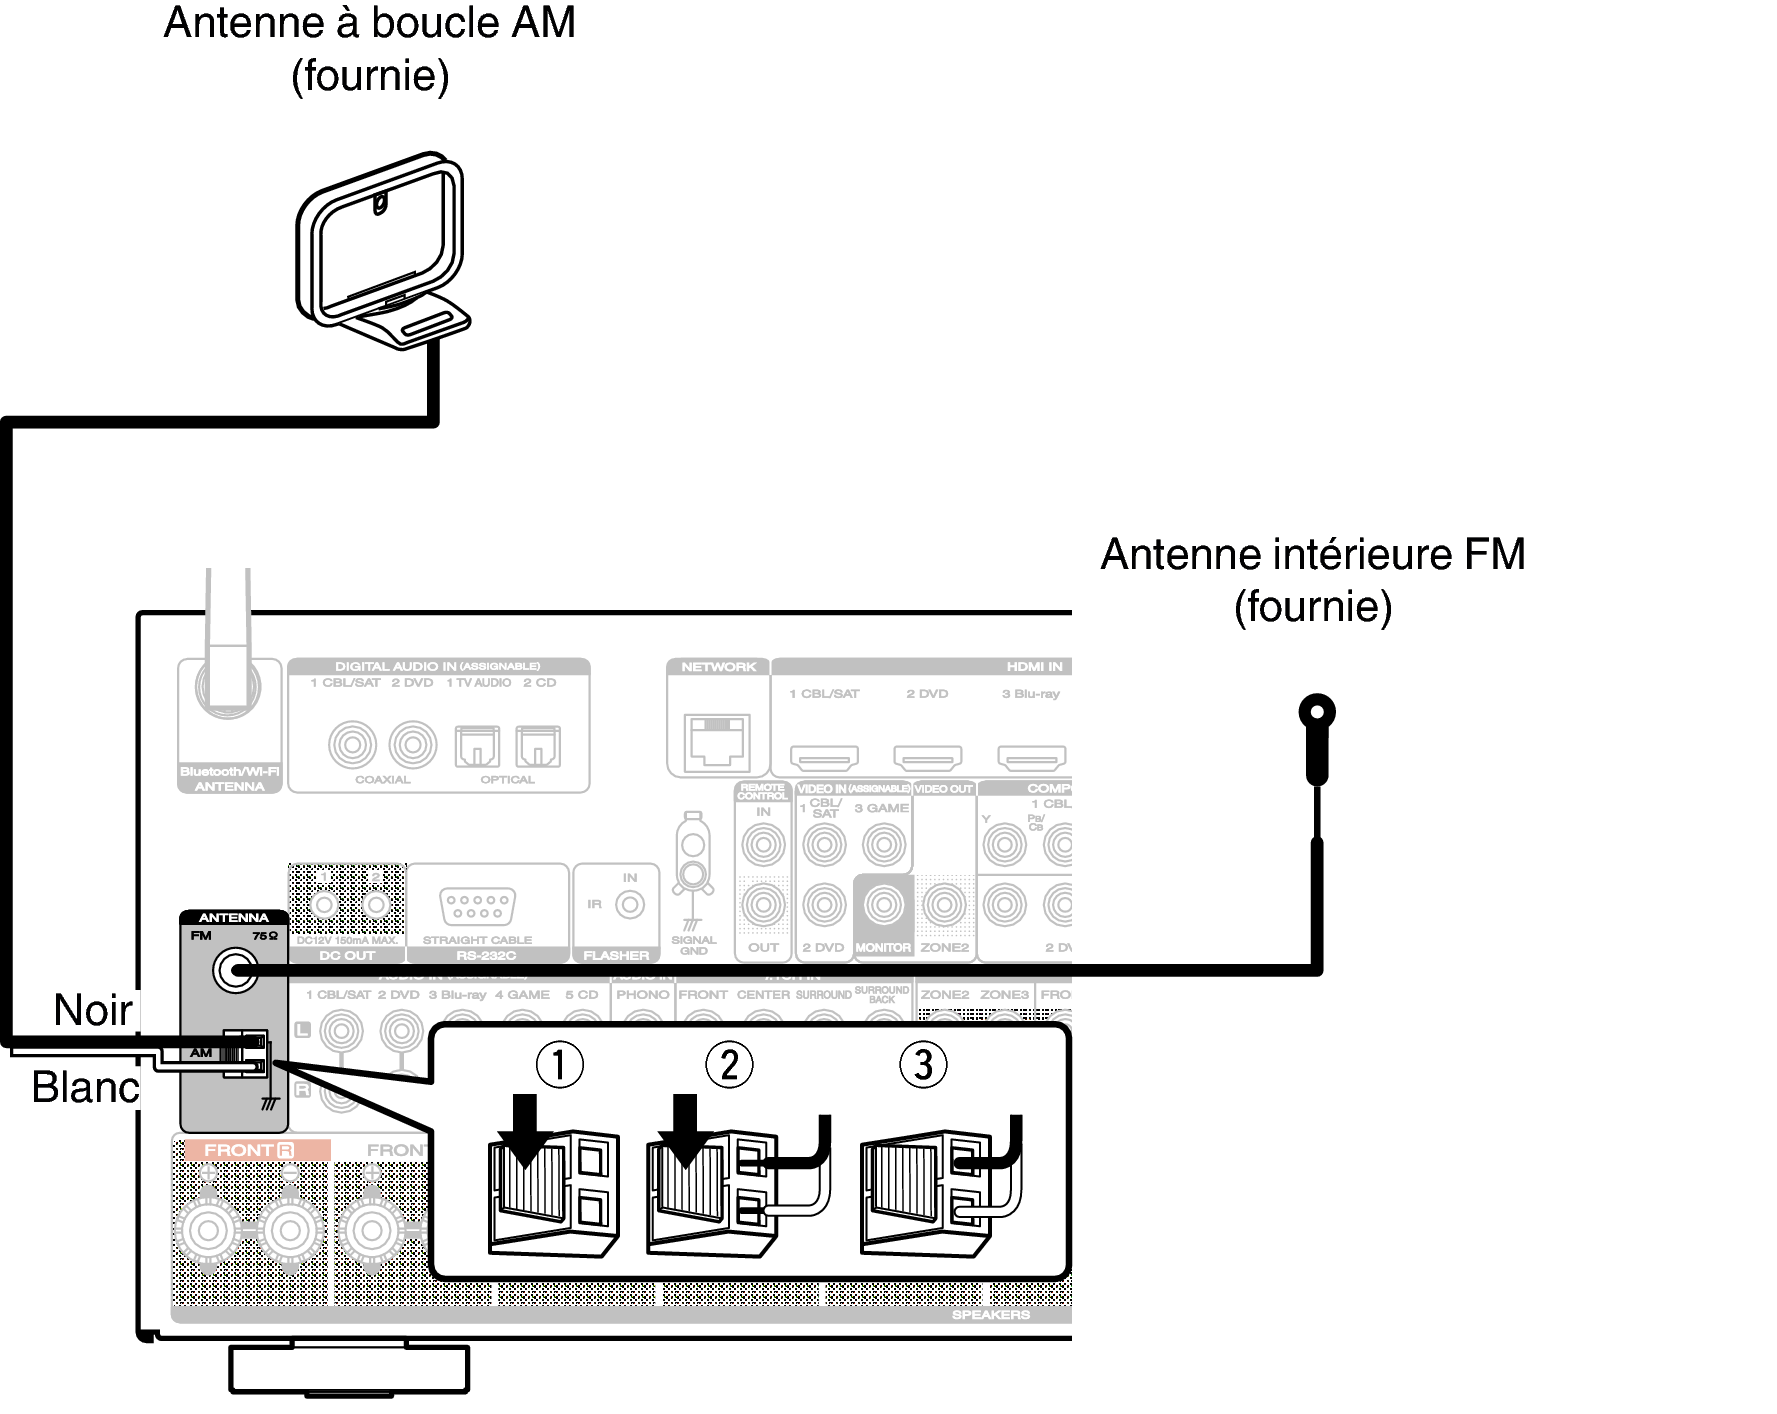 Connexion d'une antenne FM/AM AV7704